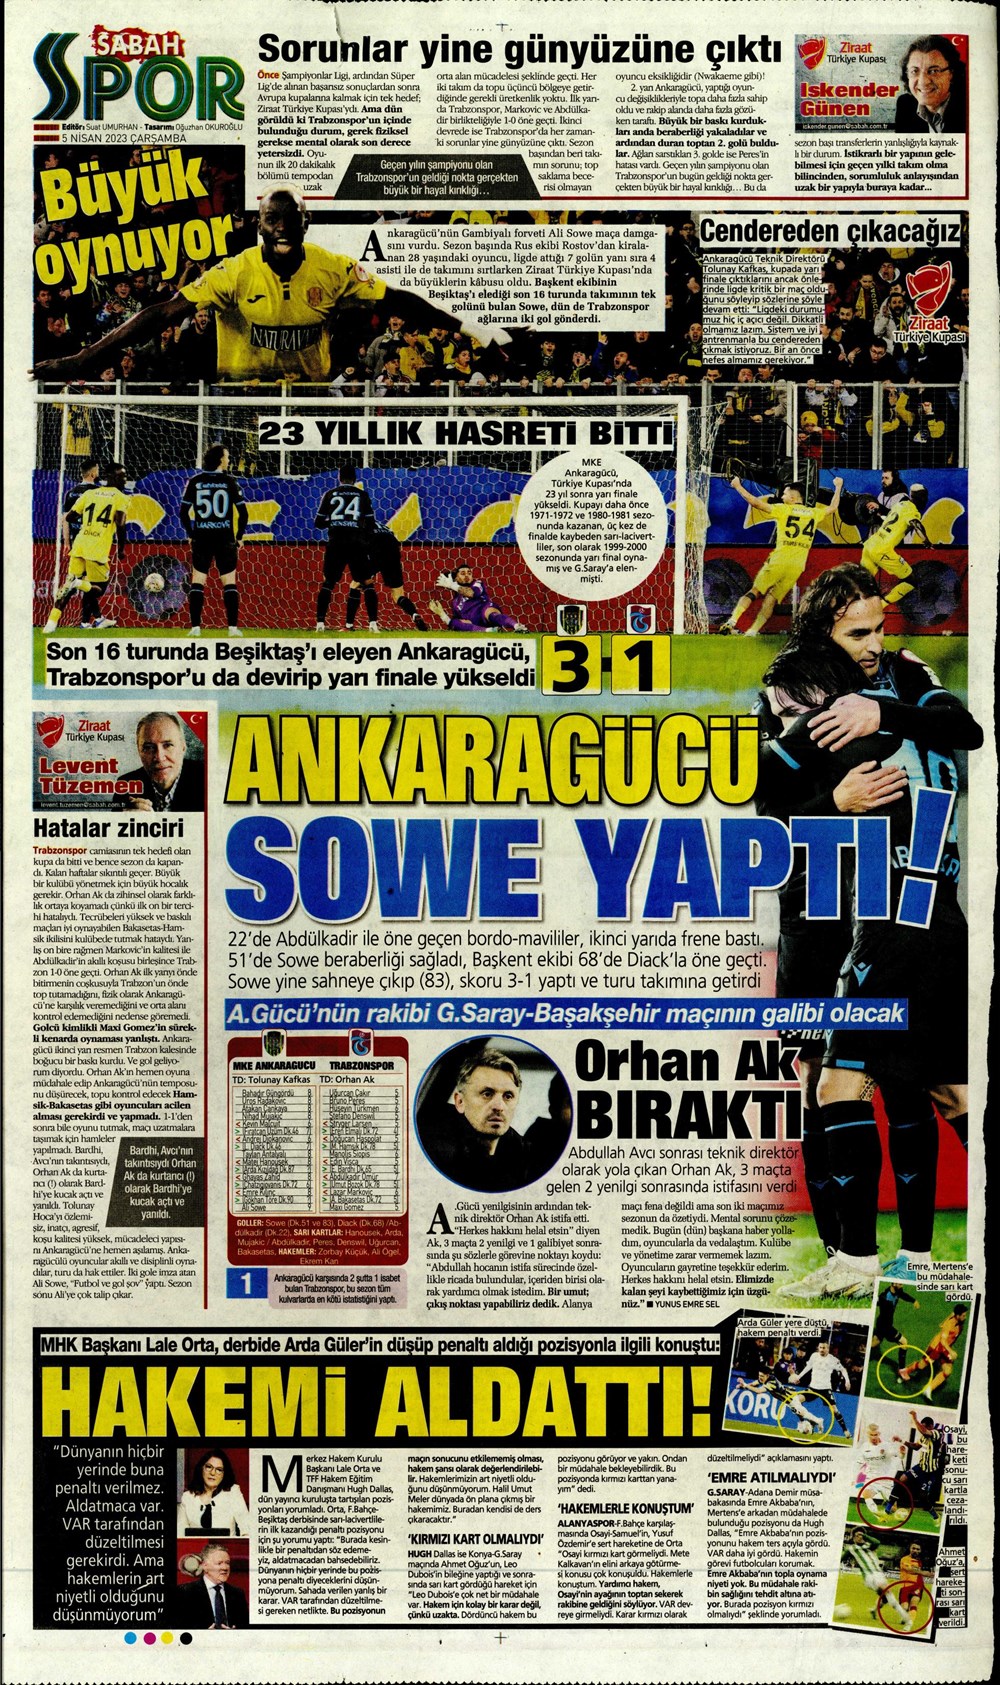 "Dünyada kimse buna penaltı demez" - Sporun manşetleri (5 Nisan 2023)  - 27. Foto